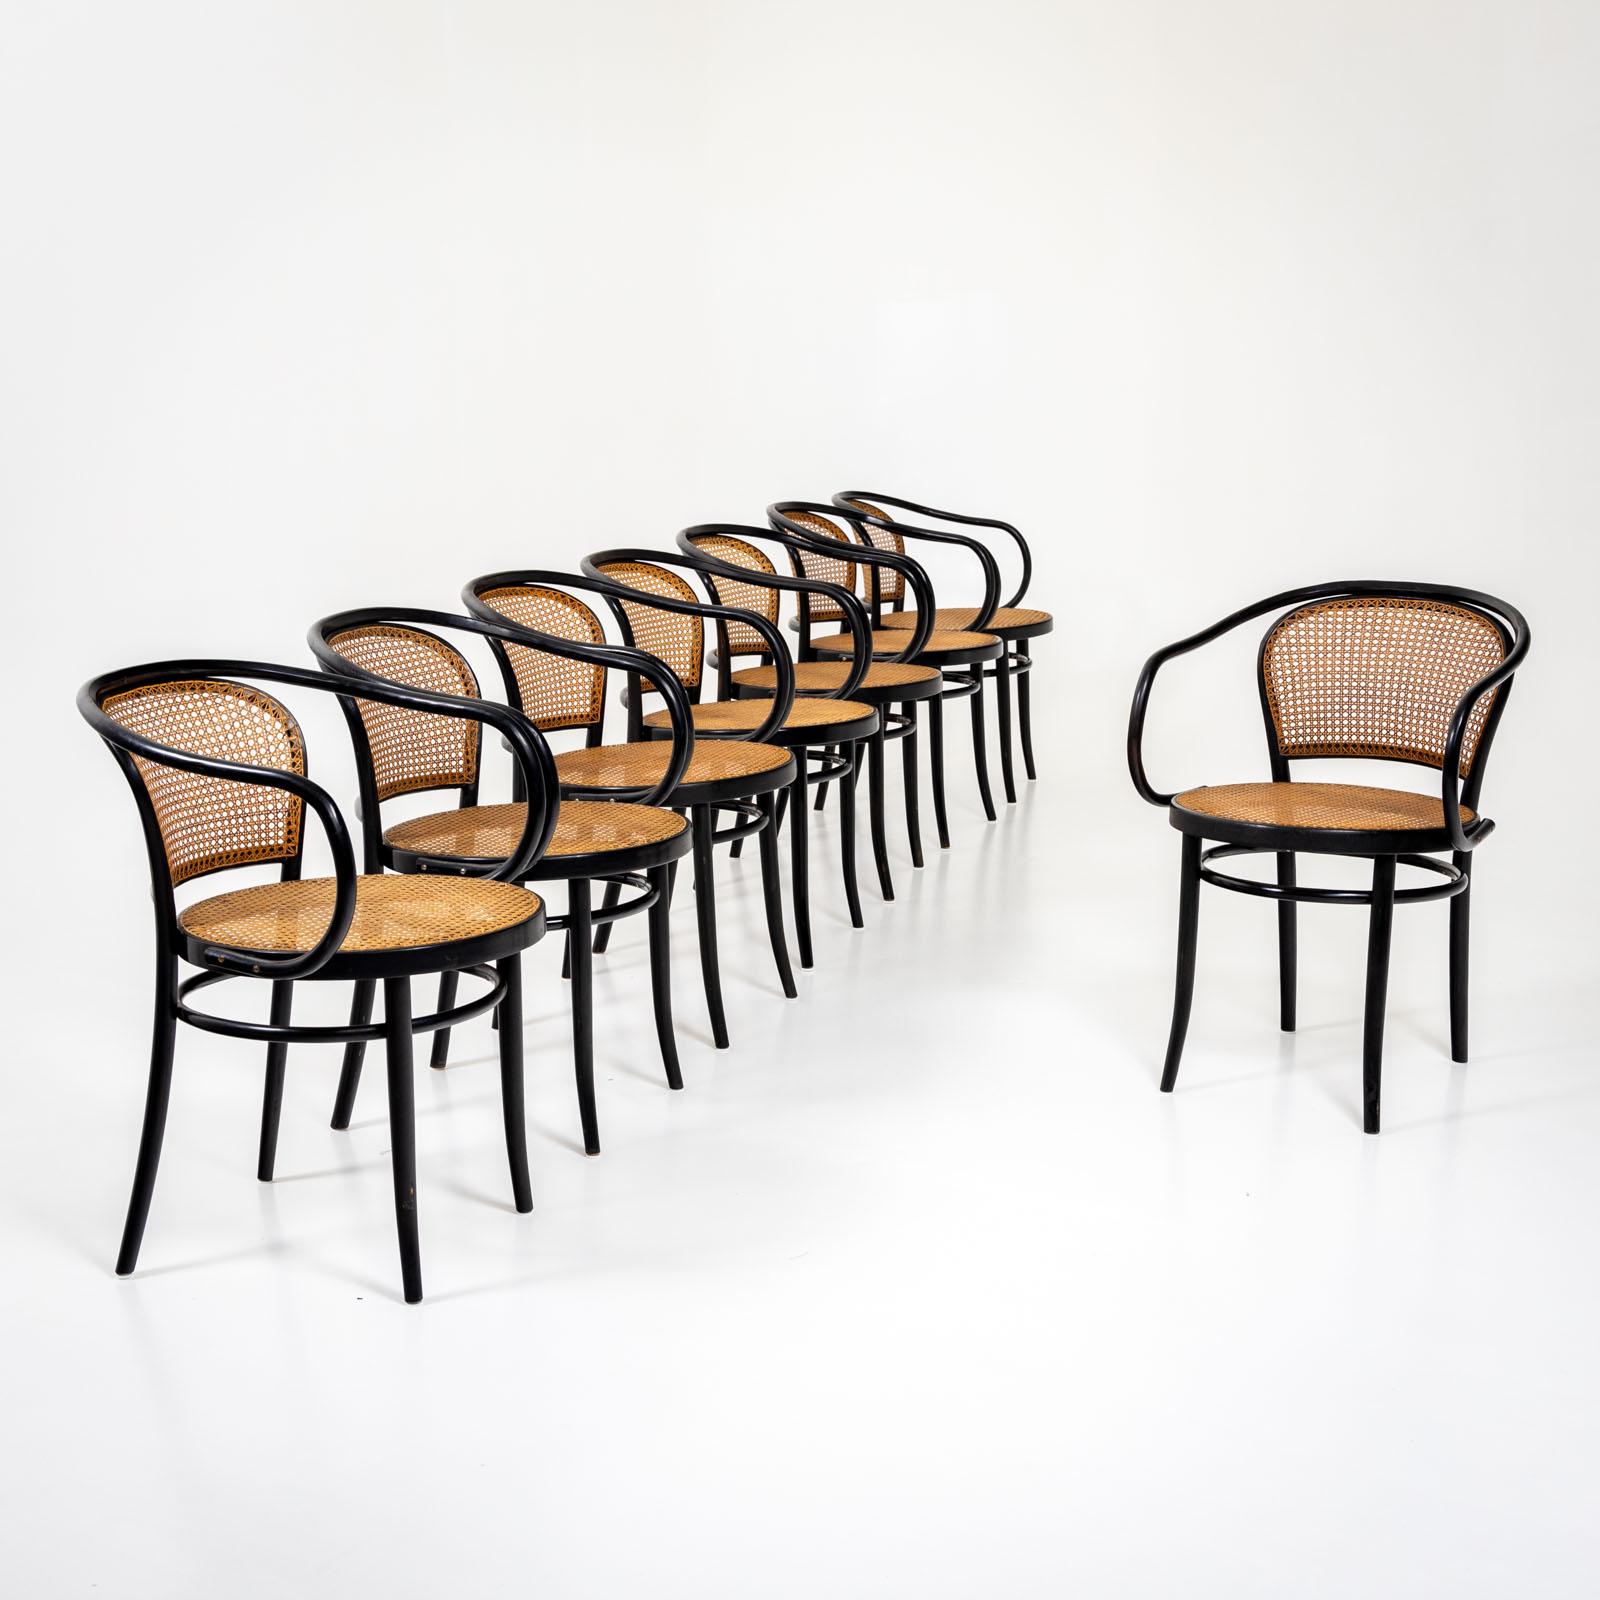 Ensemble de dix chaises en bois courbé noir de Drevounia, anciennement Tchécoslovaquie. Les chaises sont conçues dans le style de Thonet. Les assises et les dossiers sont recouverts de vannerie viennoise. Label sur la face inférieure : 